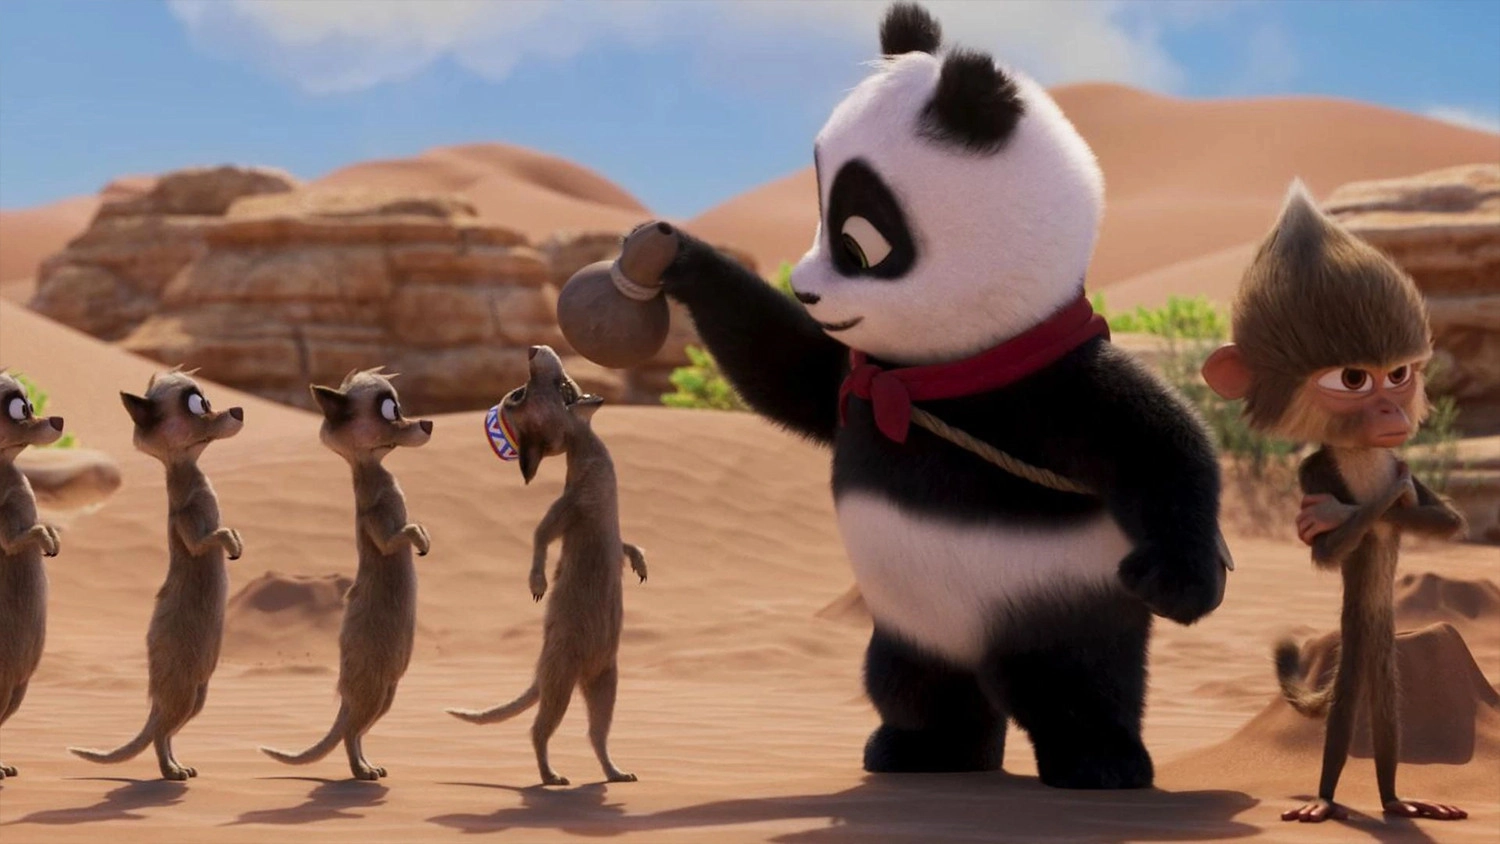 Review phim Panda Đại Náo Lãnh Địa Vua Sư Tử, Phim có kết hợp giữa yếu tố phiêu lưu, hài hước và những thông điệp sâu sắc về tình bạn